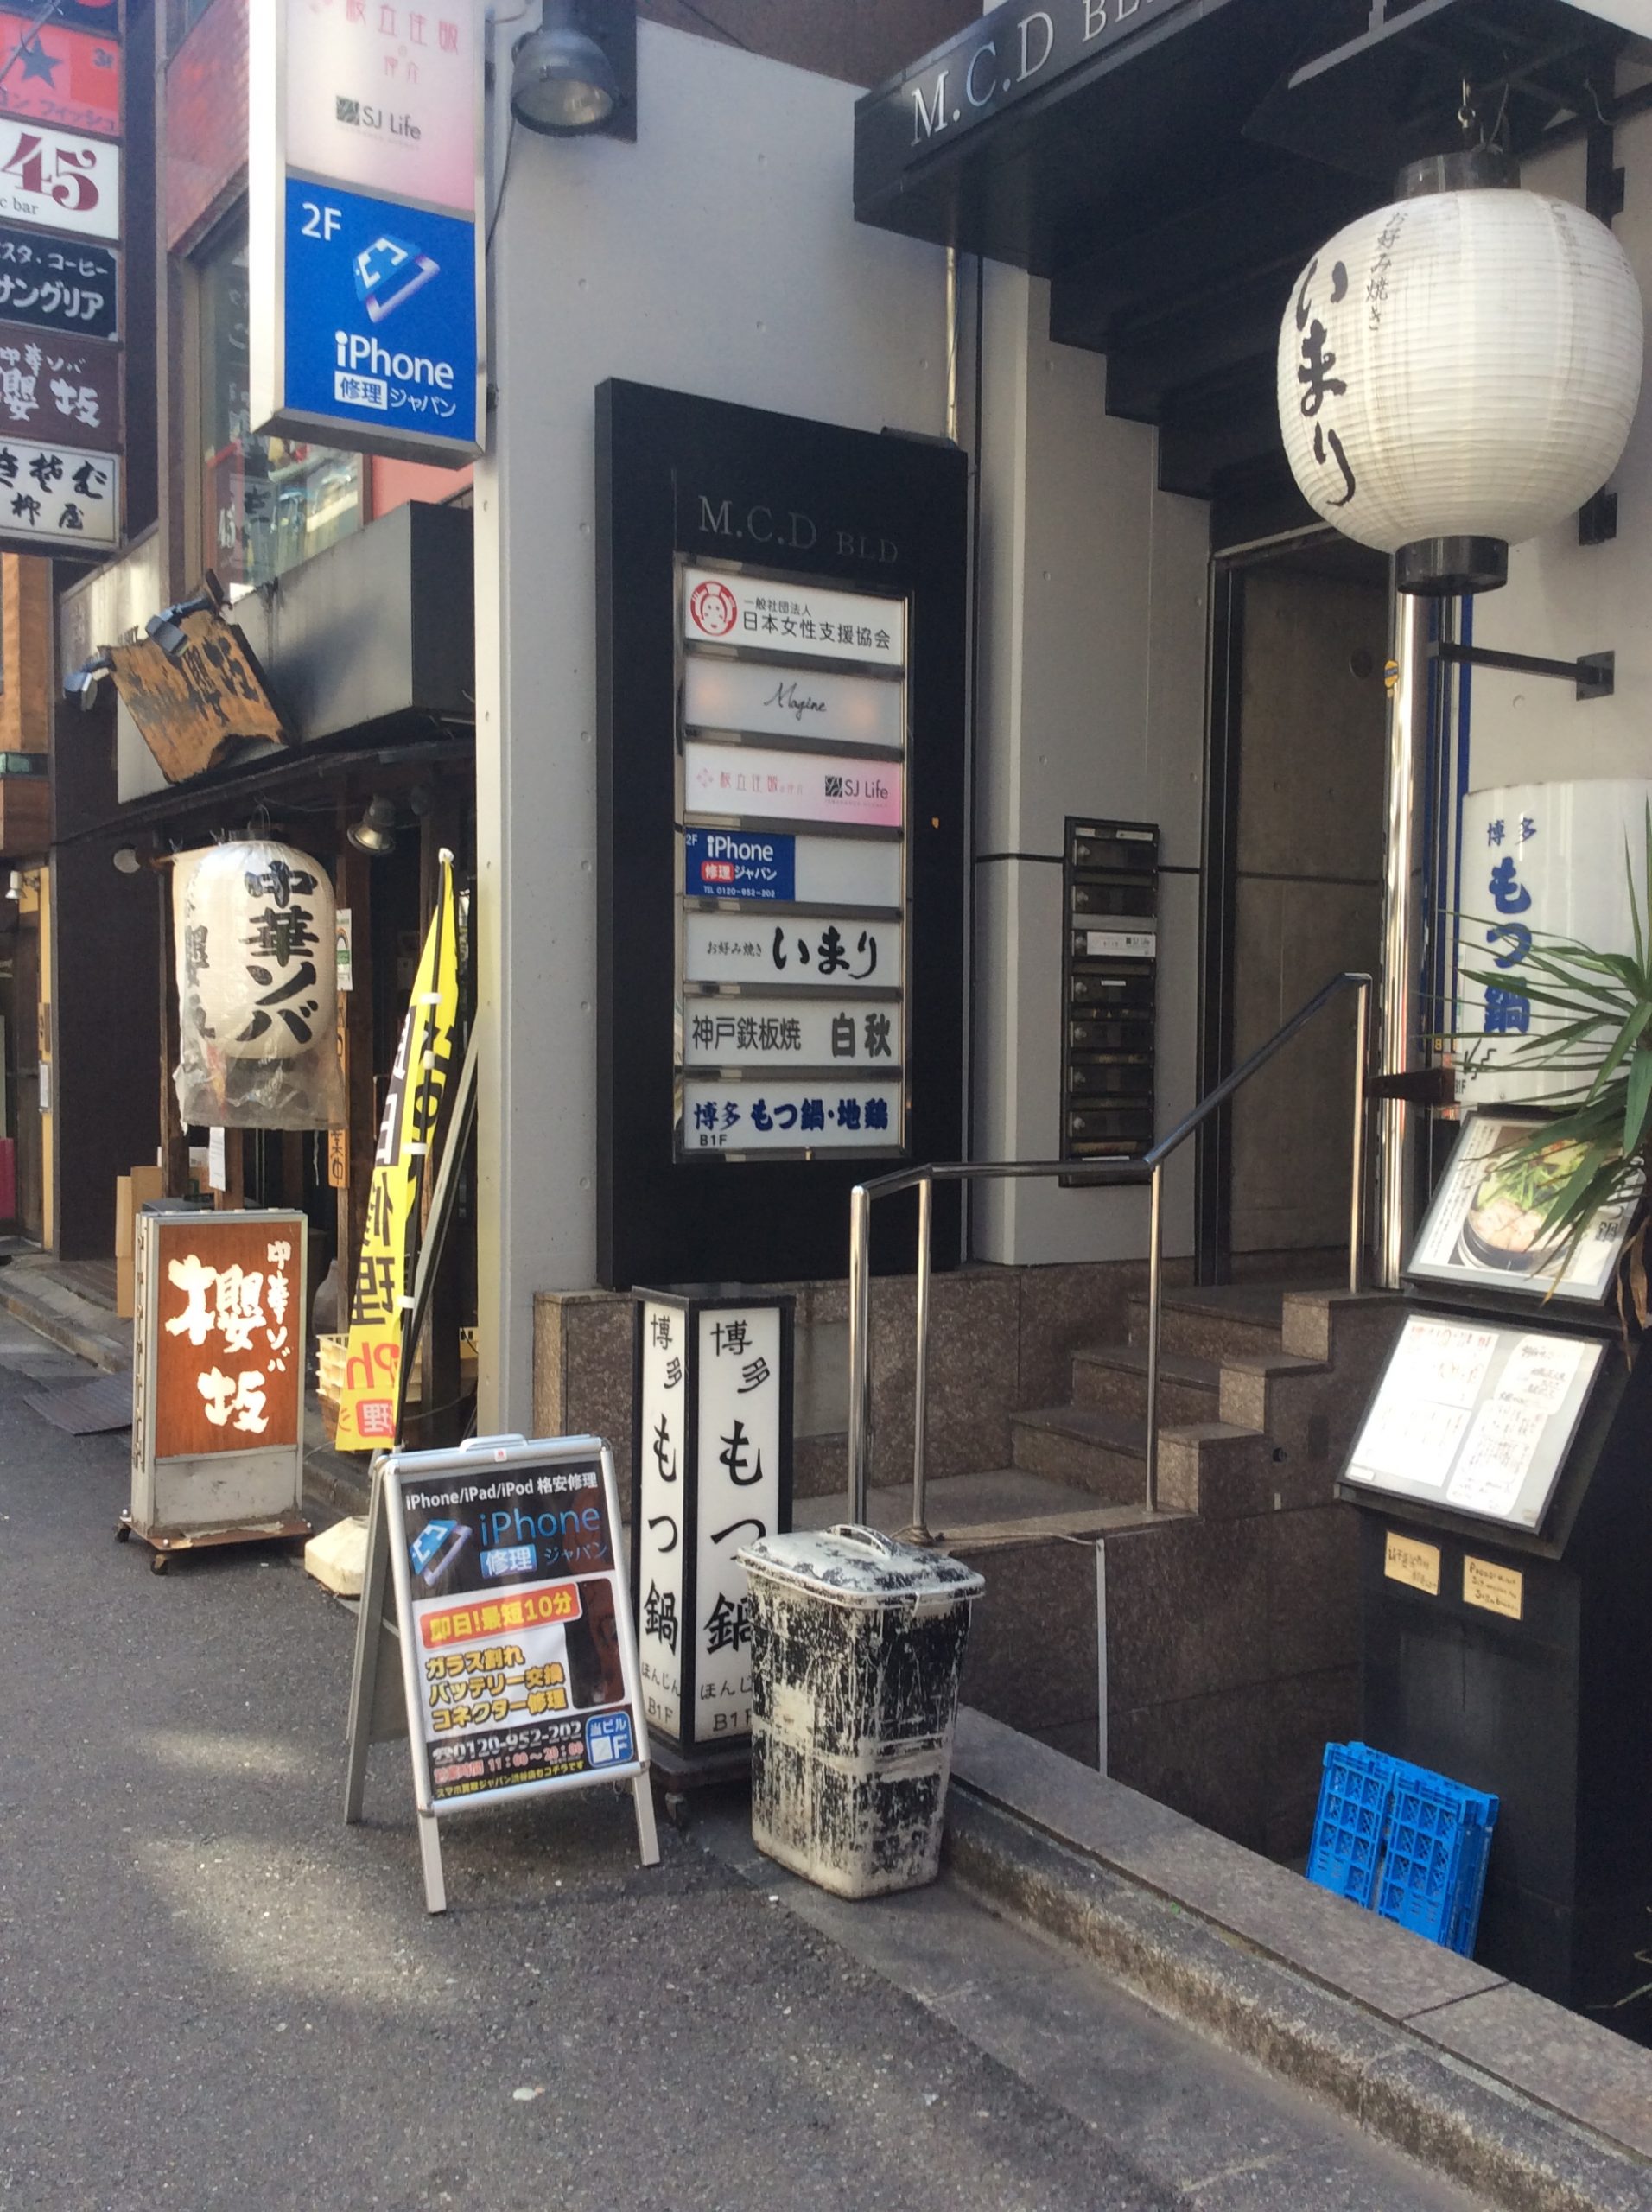 明けましておめでとうございます！本年も渋谷店はスマホを修理いたします。